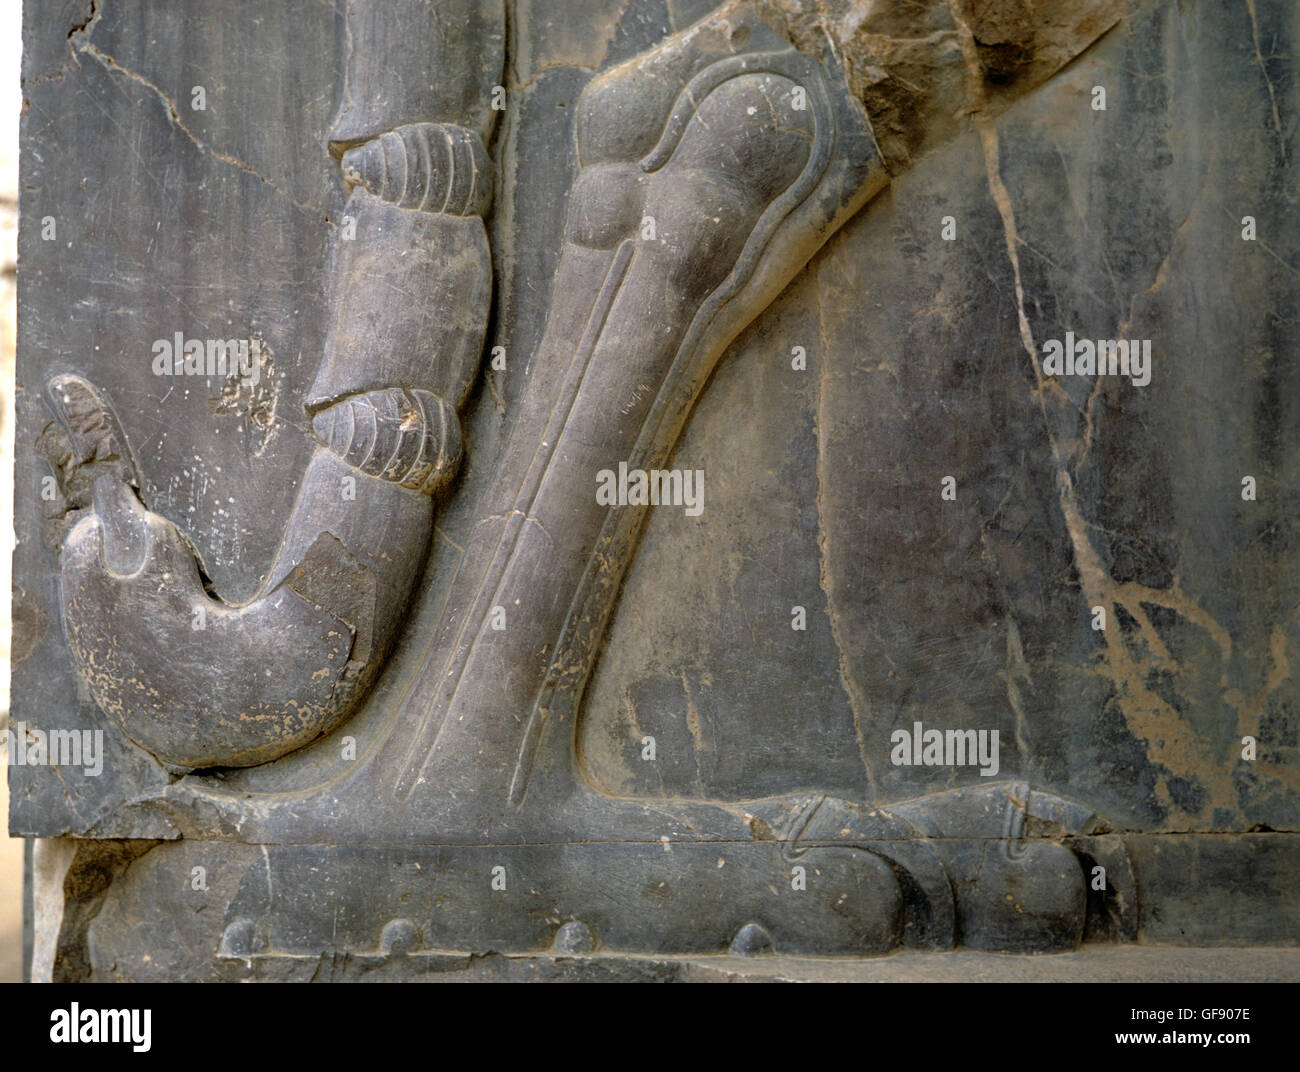 Dettaglio della coda di scorpione di animale composito, porta nella sala delle colonne 100, Persepolis, Iran 690125 129 Foto Stock